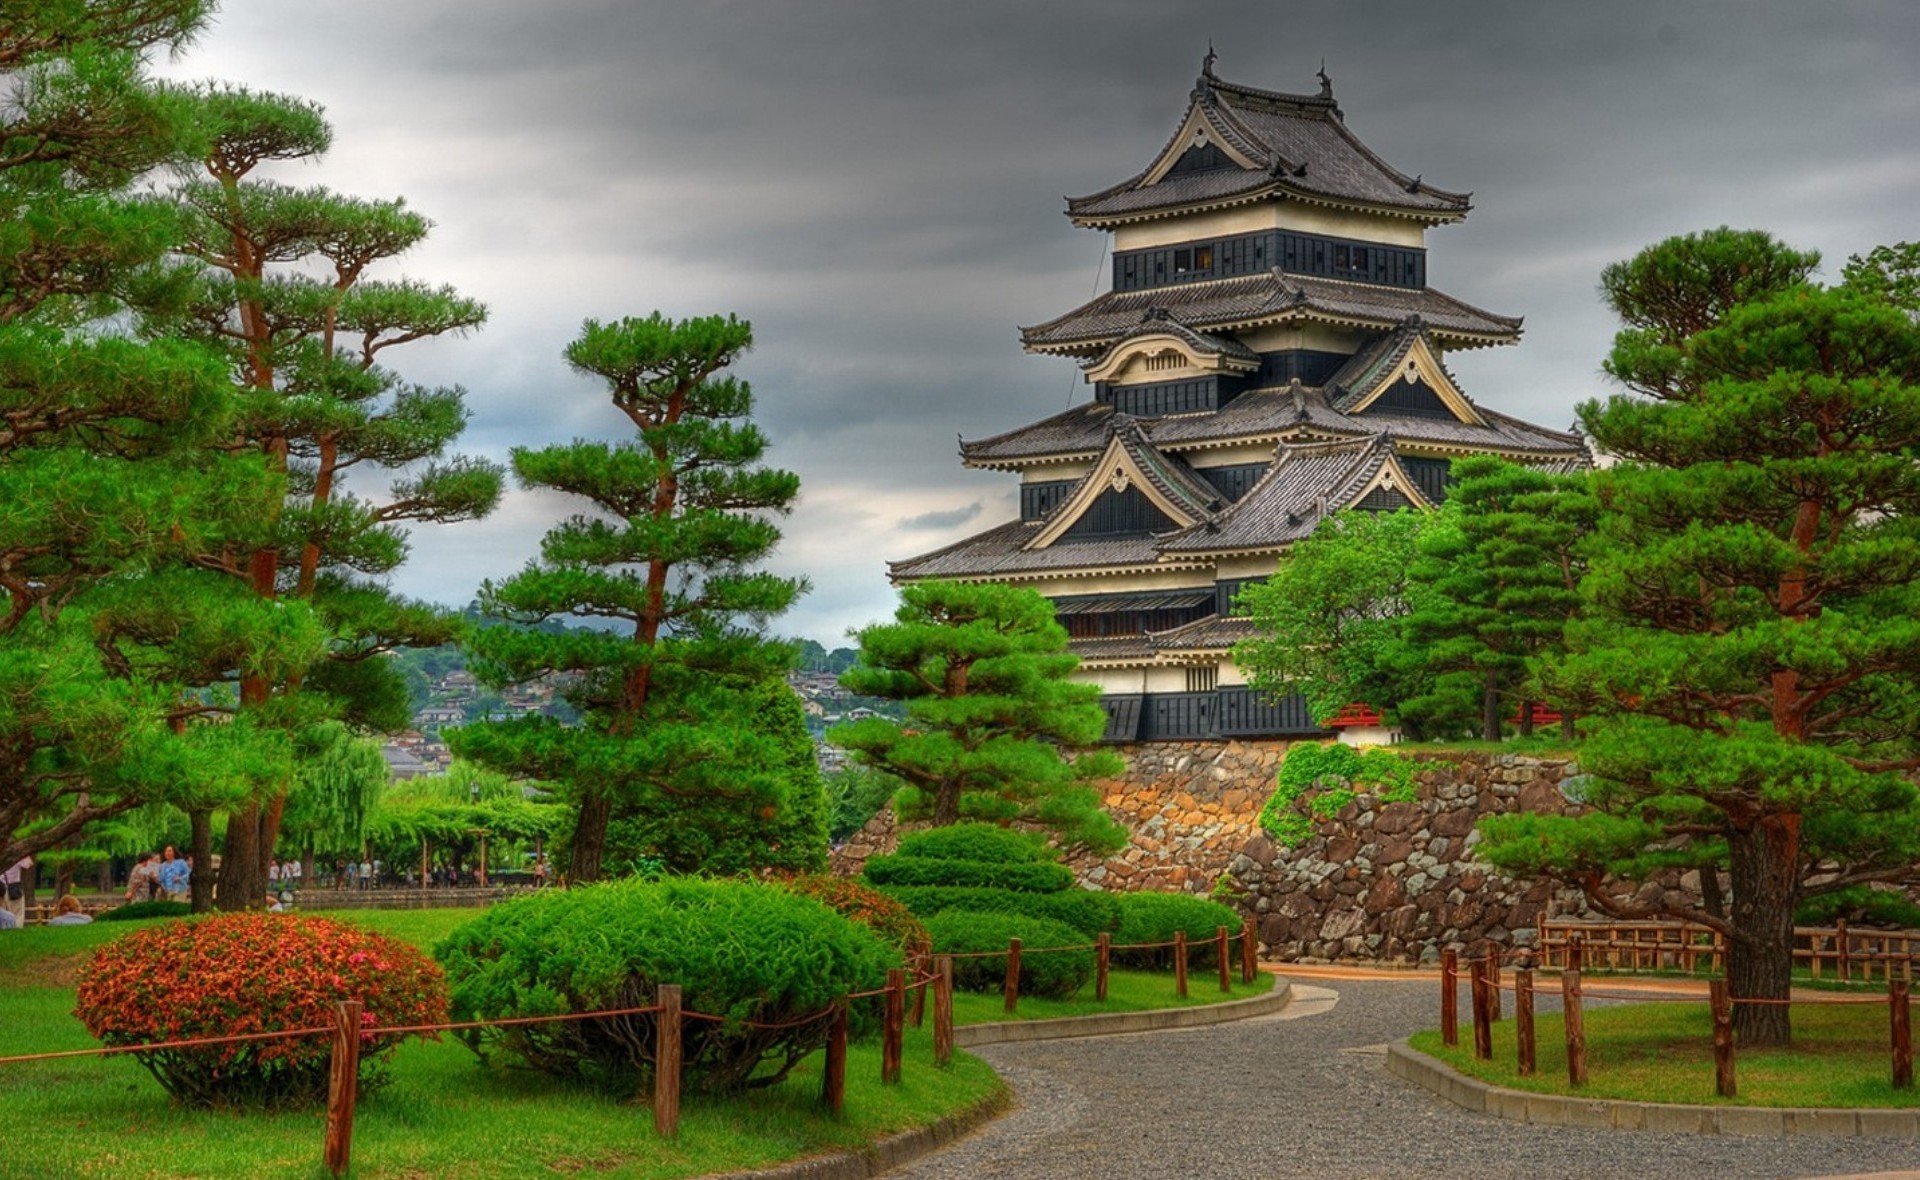 Скачать обои Замок Мацумото на телефон бесплатно